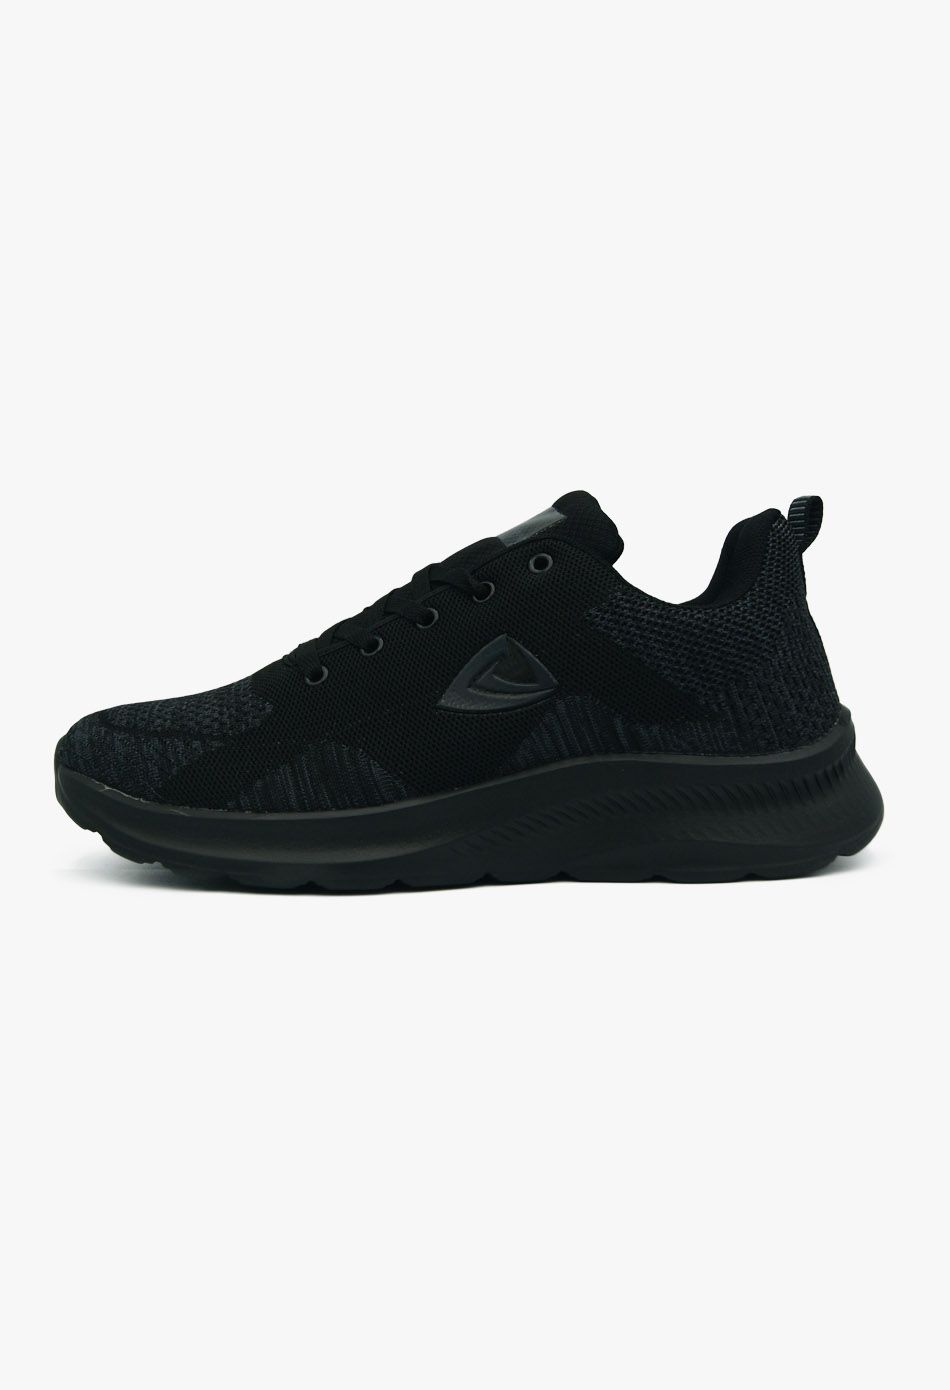 Ανδρικά Αθλητικά Παπούτσια για Τρέξιμο Μαύρο / 153A-black ΑΝΔΡΙΚΑ ΠΑΠΟΥΤΣΙΑ joya.gr